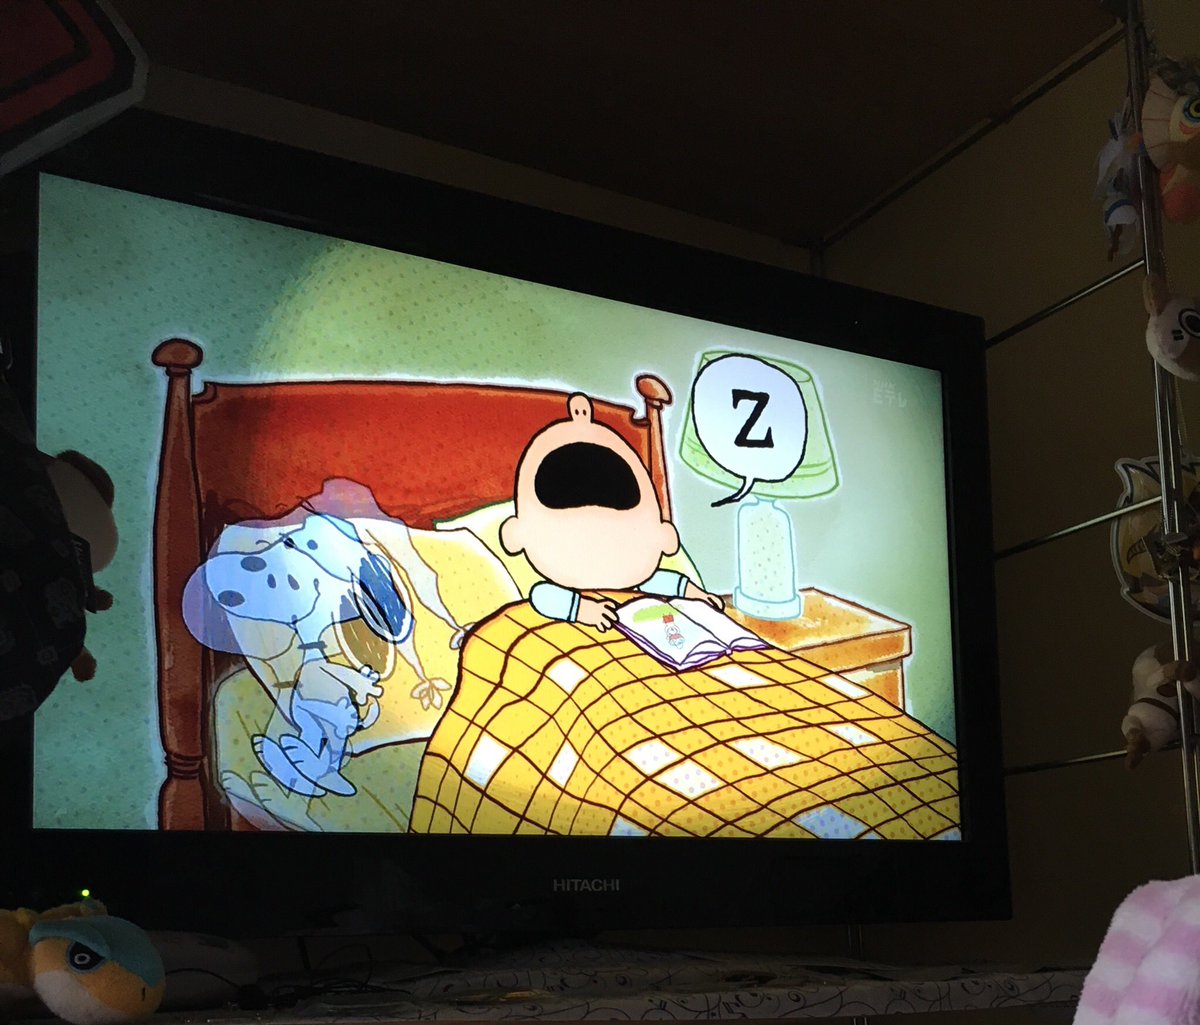 Pipi Mhw Ib A Twitter 今やってたスヌーピーのアニメで帽子かぶってベッドで横になってるスヌーピーが可愛すぎて写真撮ろうとしたら間に合わなかった